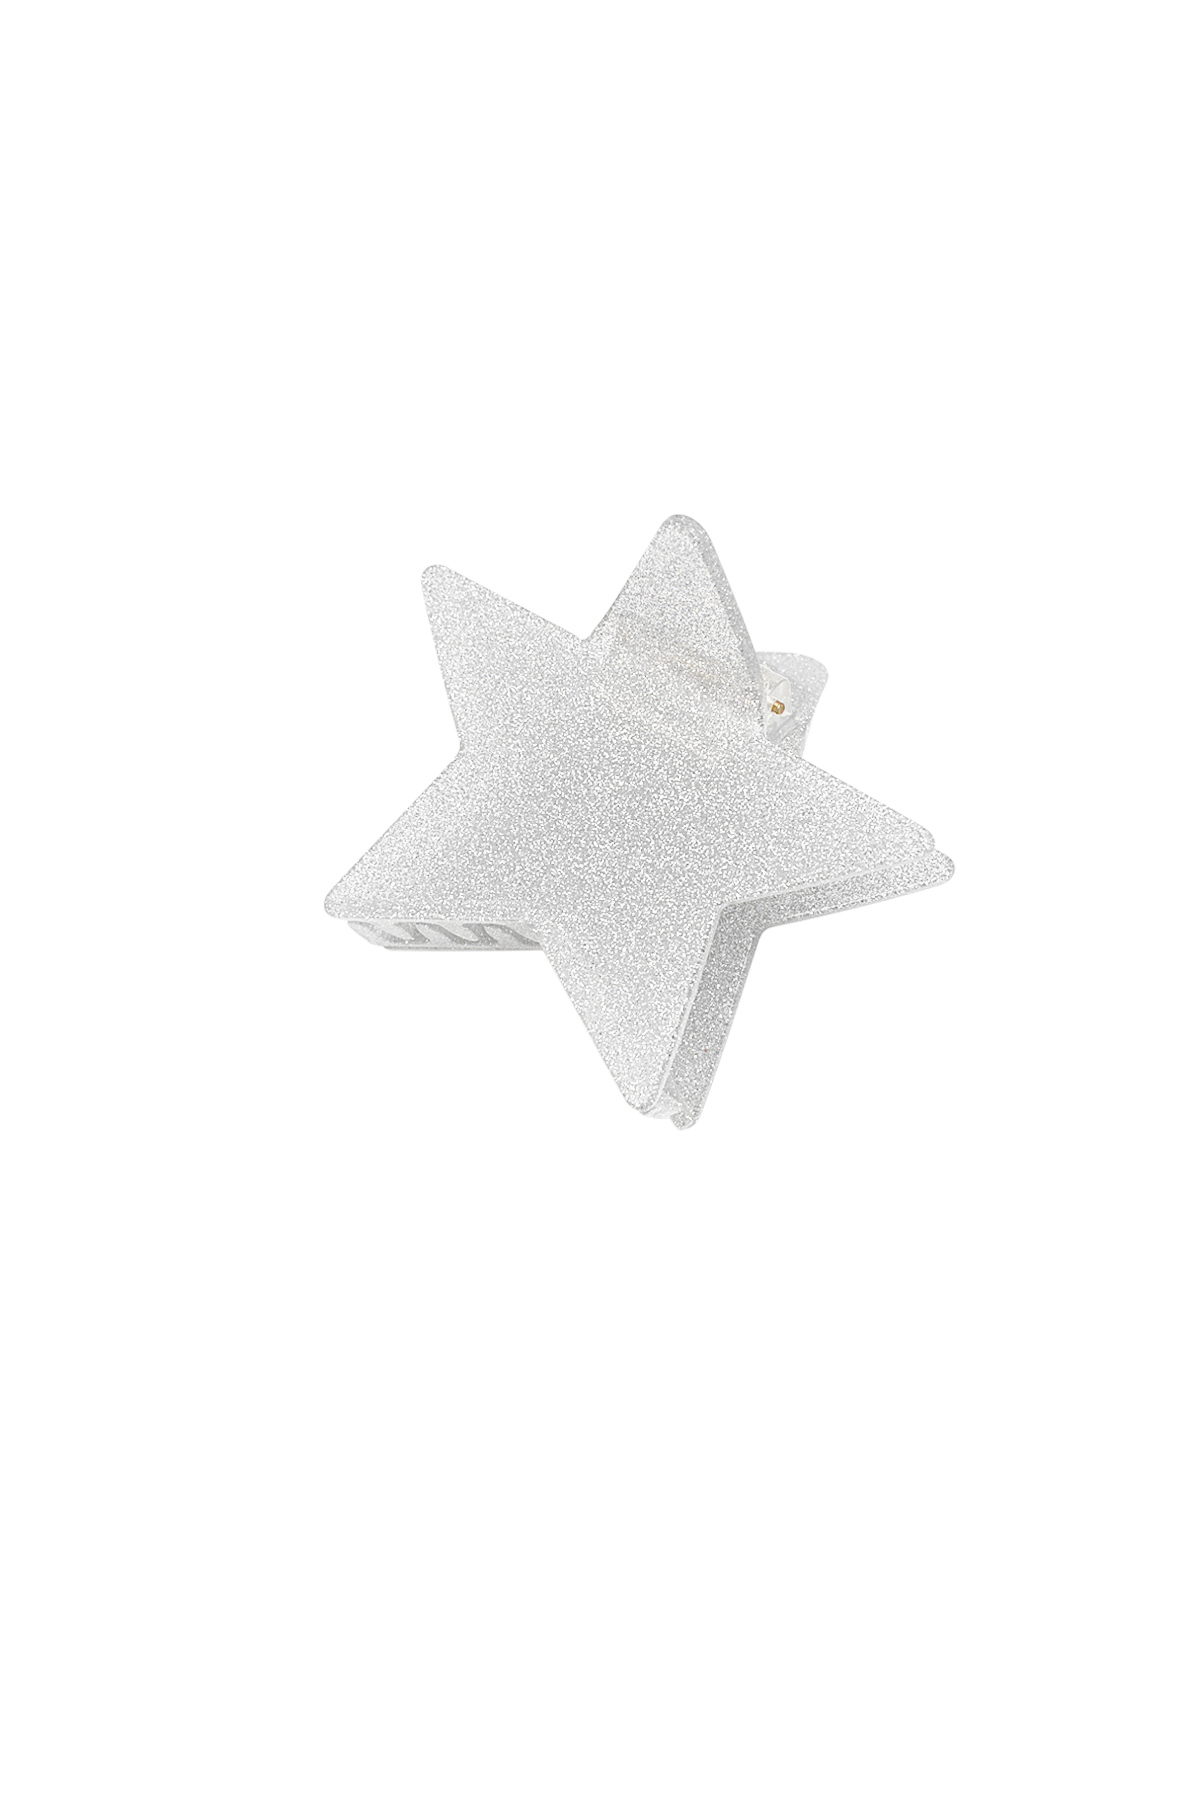 Hair clip shining star - silver h5 